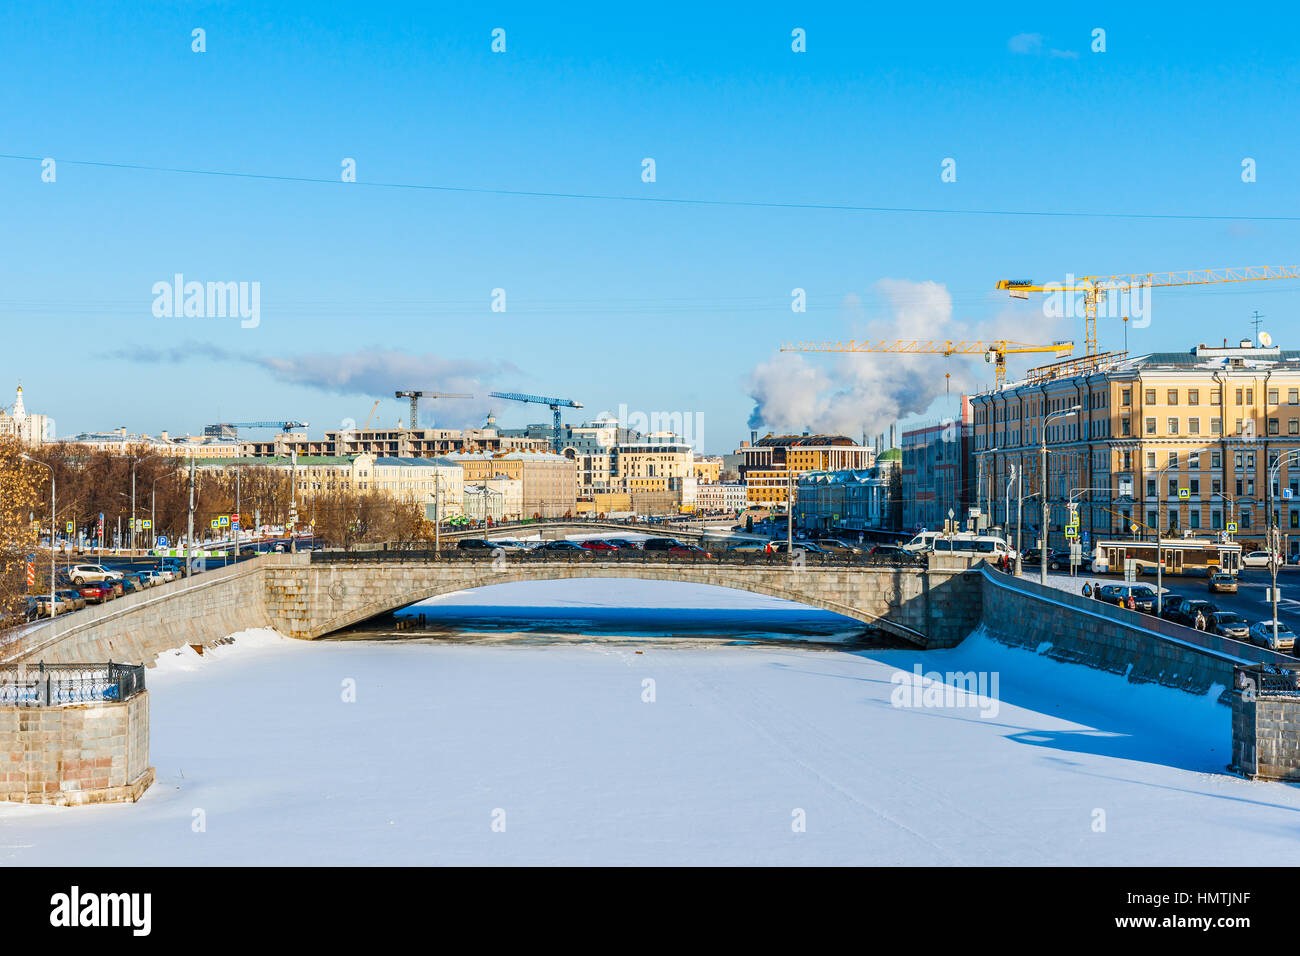 Moskau, Russland. 5. Februar 2017. Bypass-Kanal von der Moskwa ist komplett eingefroren. Die Temperatur ist heute eher gering, ca.-10 Grad Celsius (ca. 14F). Kleine Steinbrücke im Vordergrund. © Alex Bilder/Alamy Live-Nachrichten Stockfoto